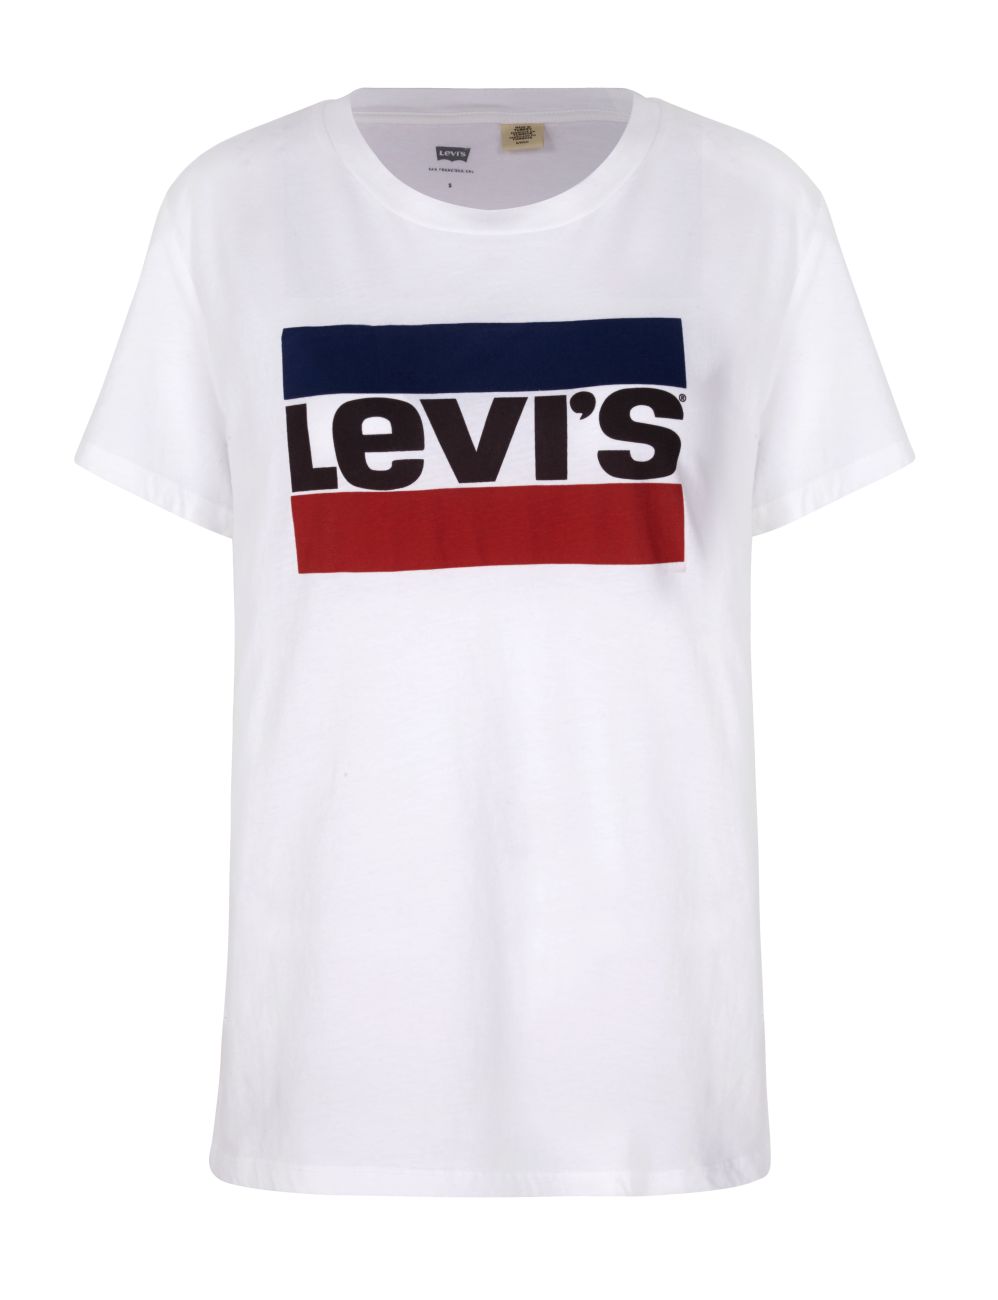 LEVIS Shirts f. Damen T-Shirt 17369-0297 weiss W18-LDT1